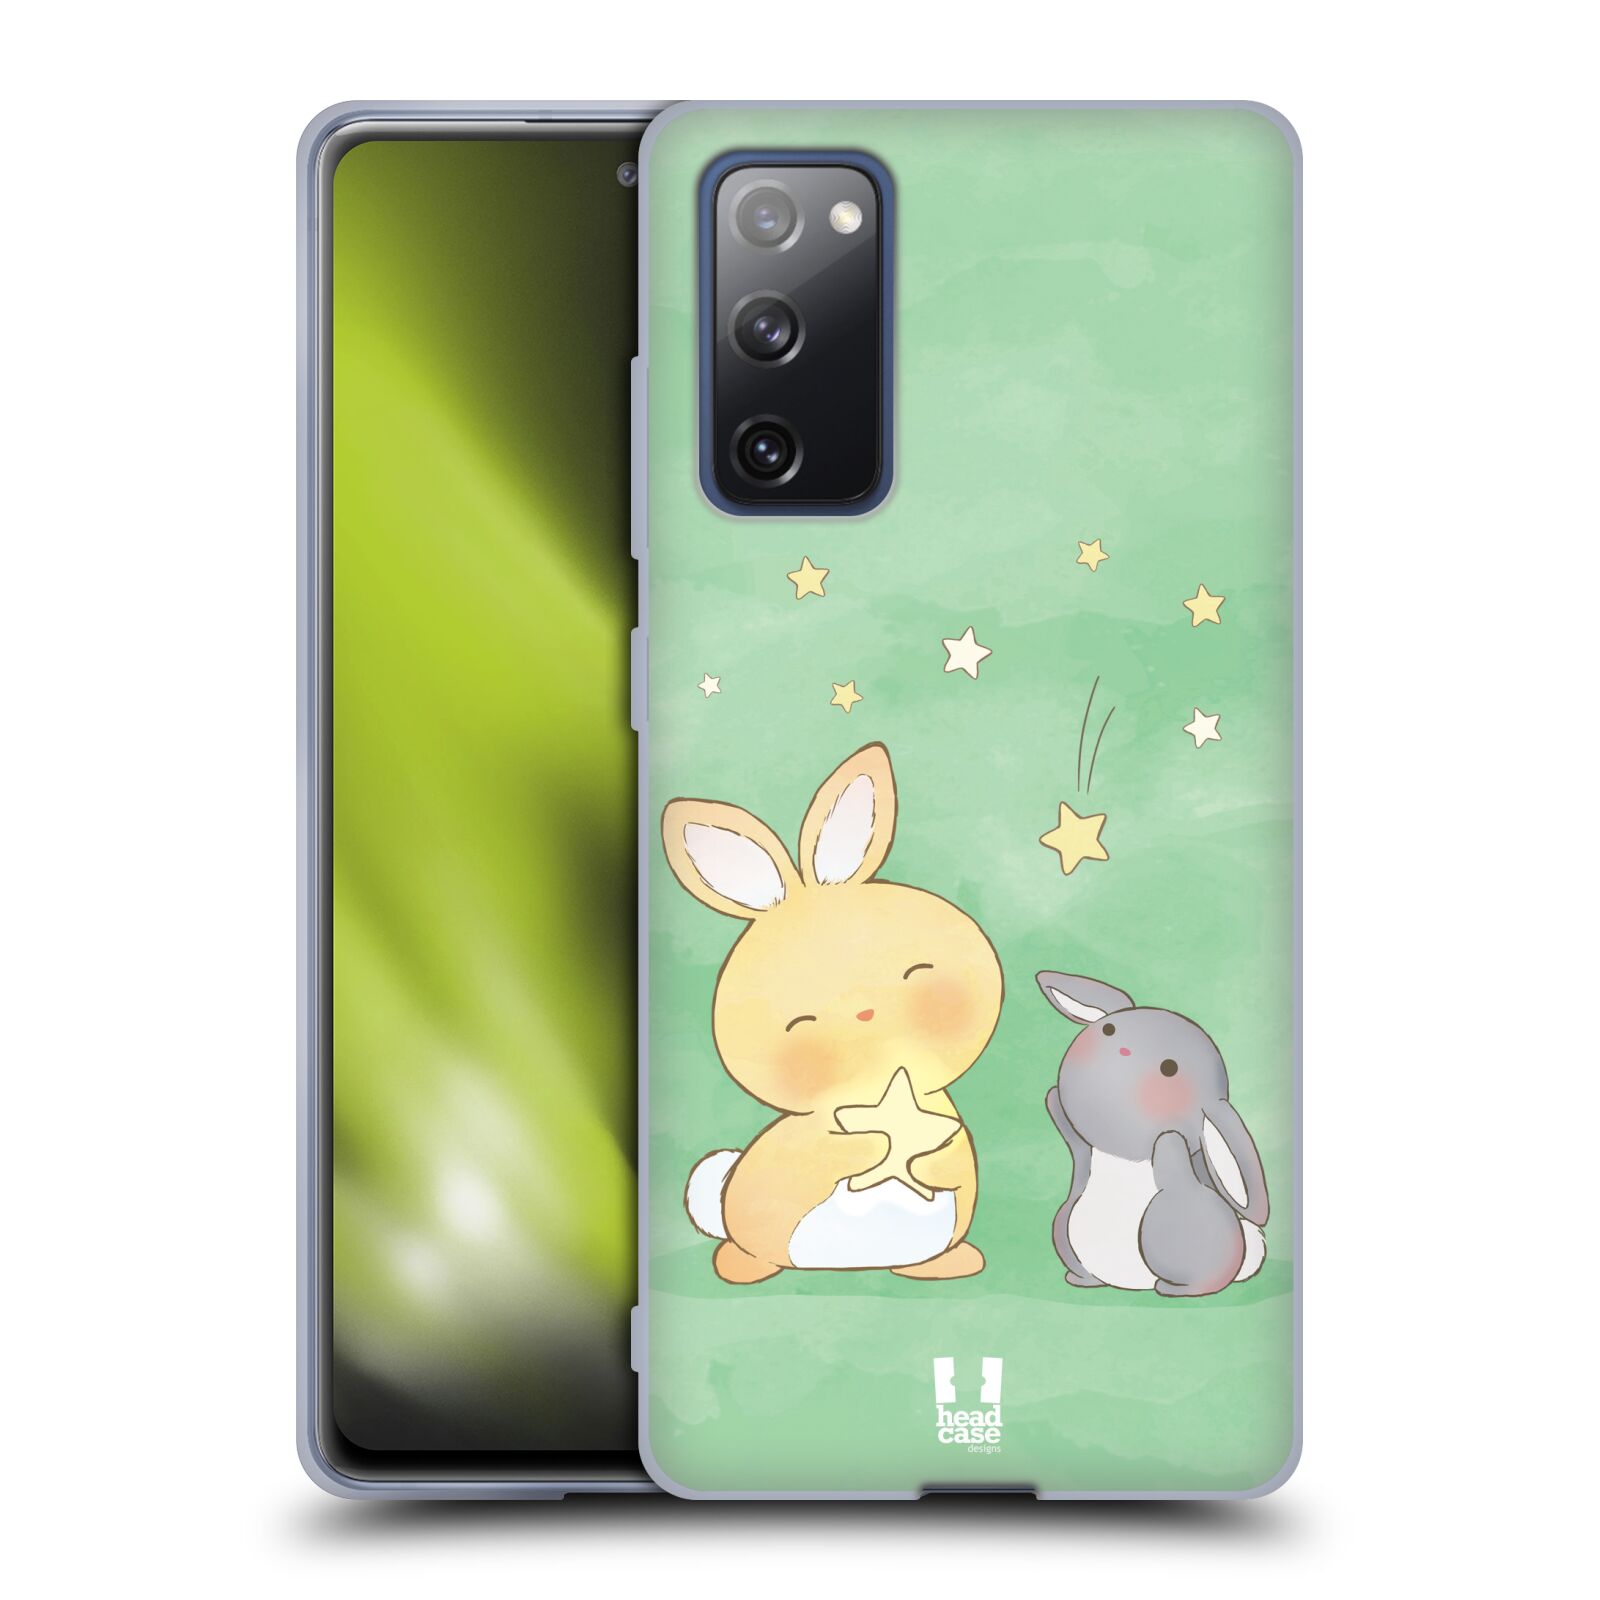 Plastový obal HEAD CASE na mobil Samsung Galaxy S20 FE / S20 FE 5G vzor králíček a hvězdy zelená